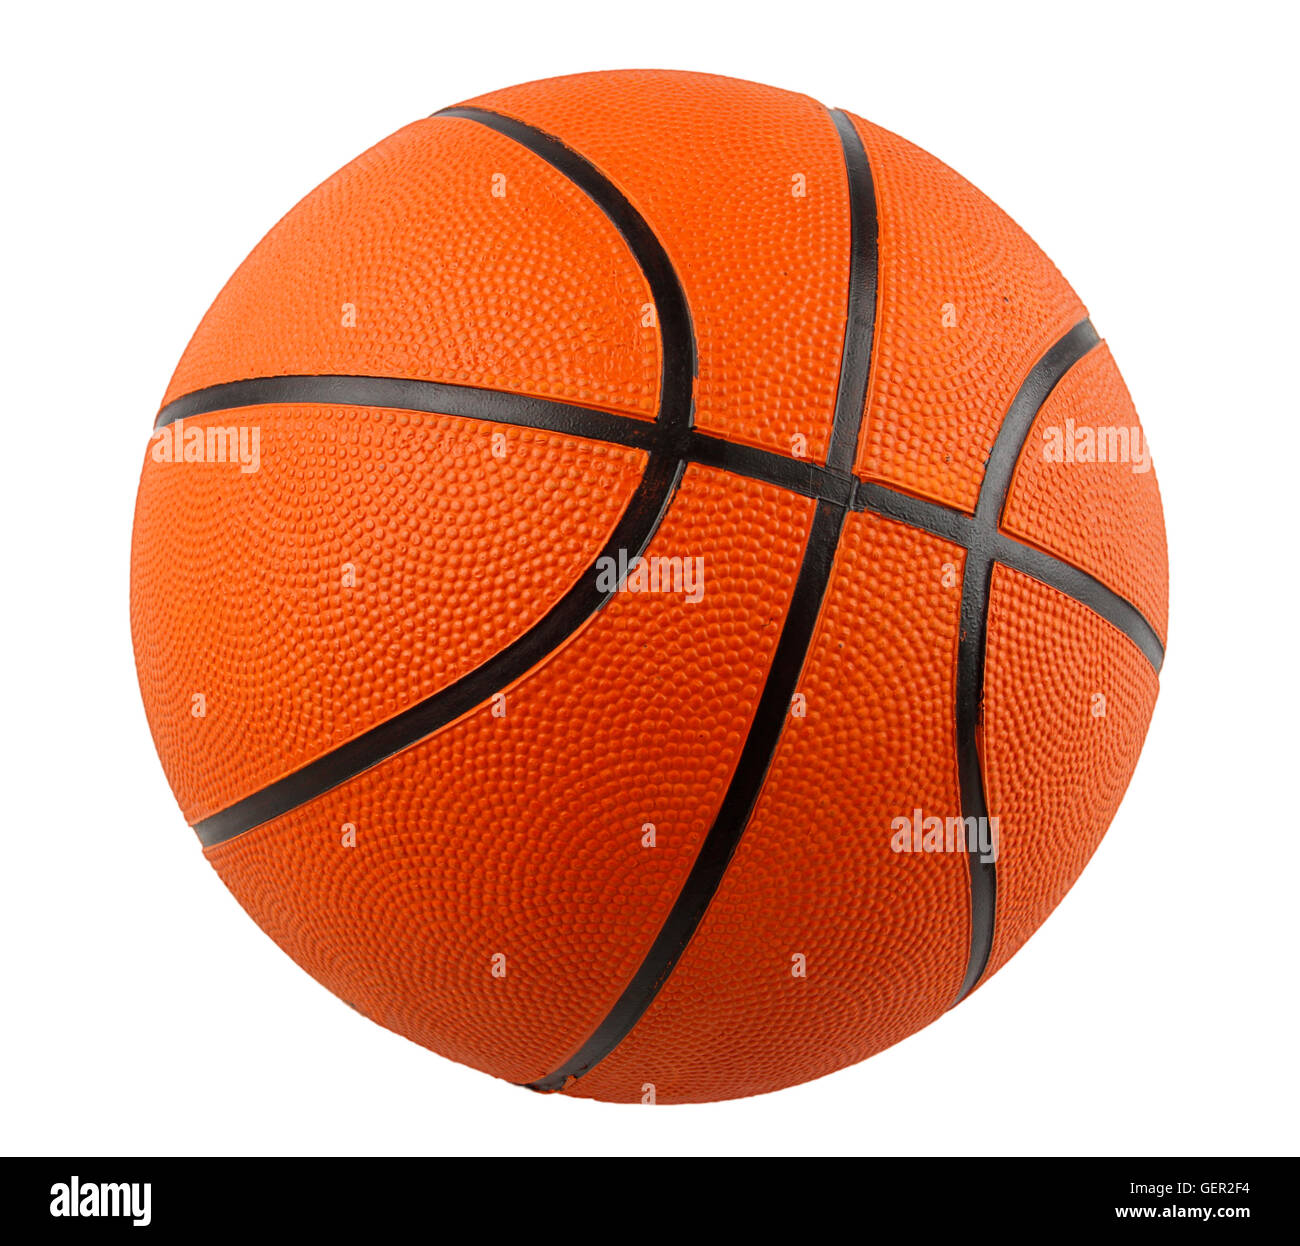 One basketball on plain background Stock Photo